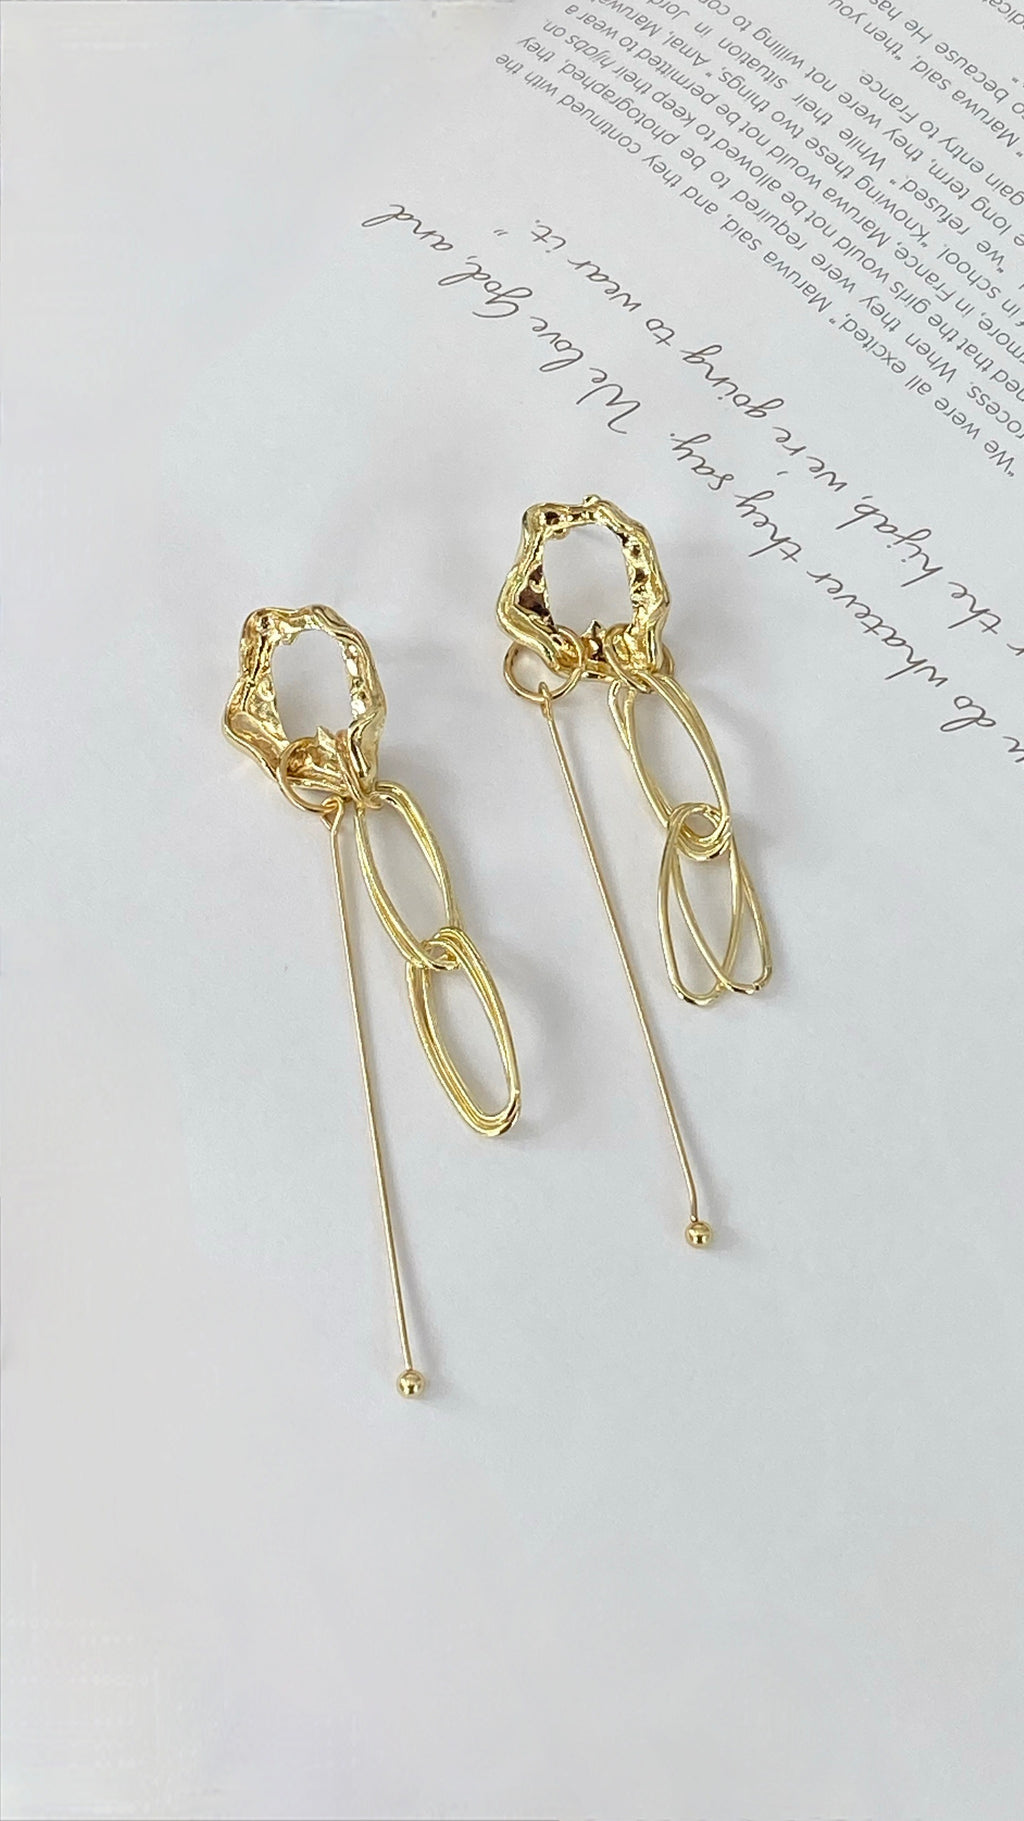 1 Gram Gold earrings simple design daily use Gold earrings 1 GRAM 916 -  YouTube